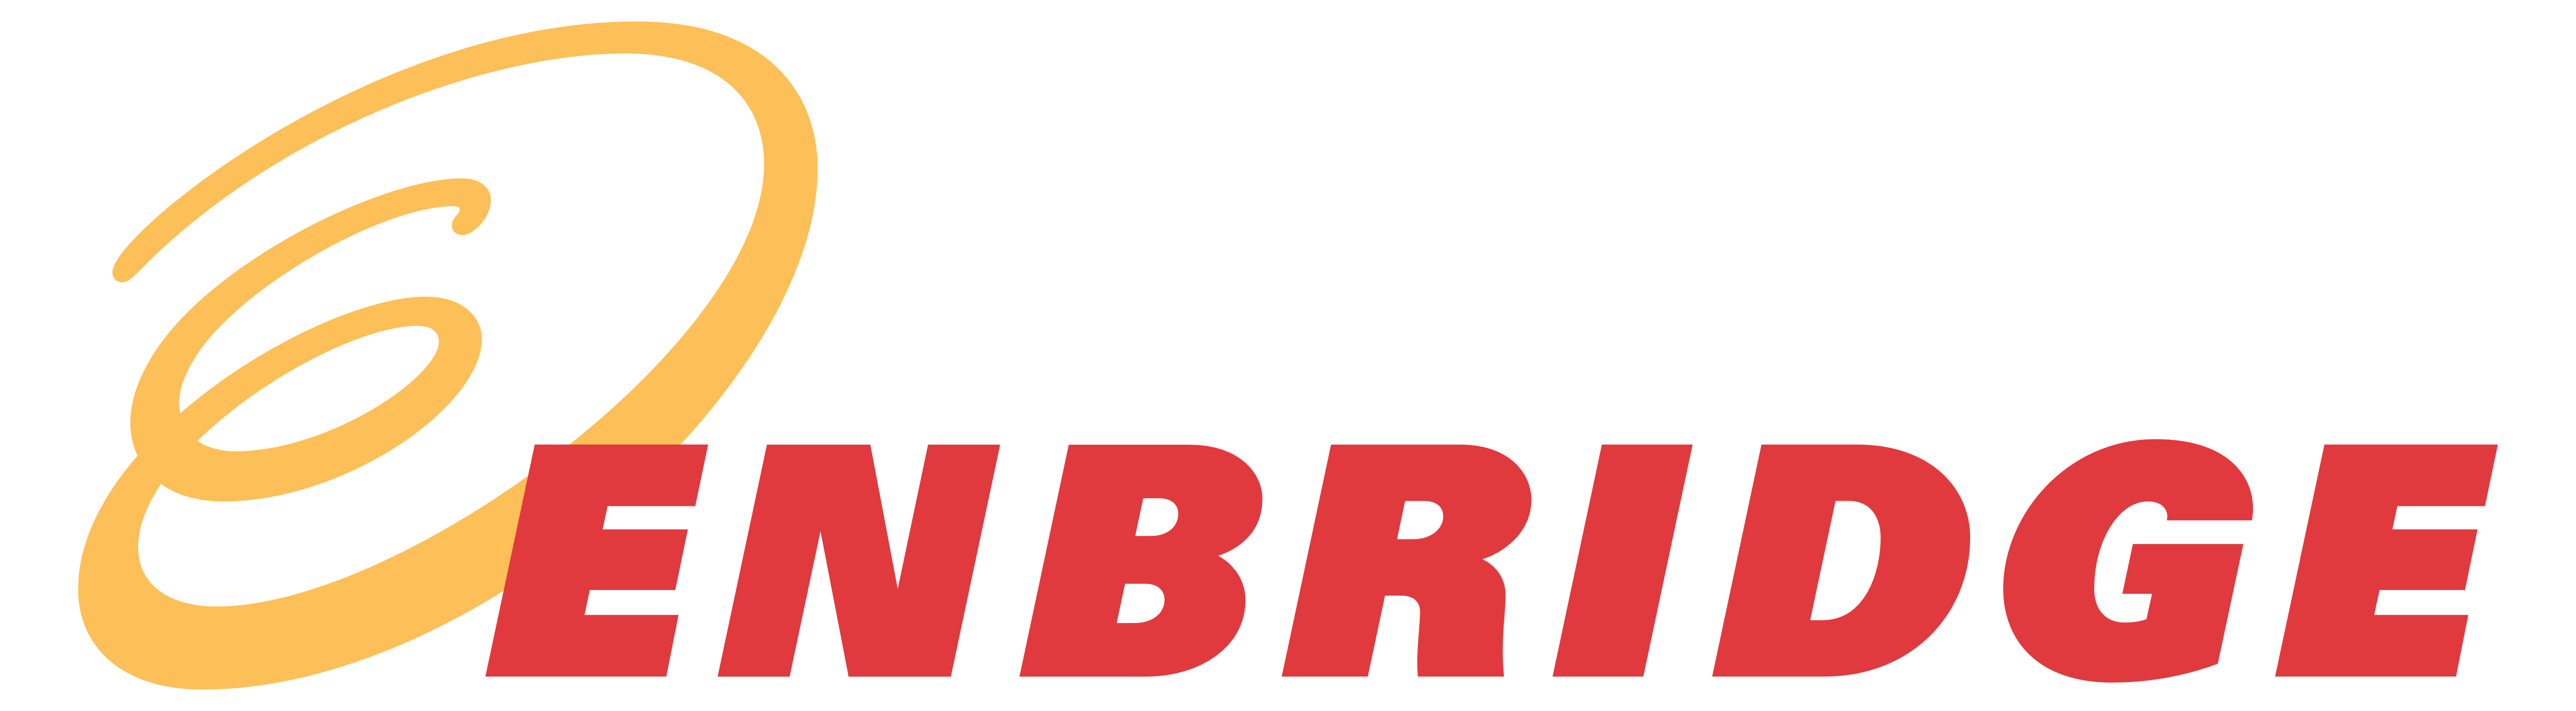 Enbridge_logo